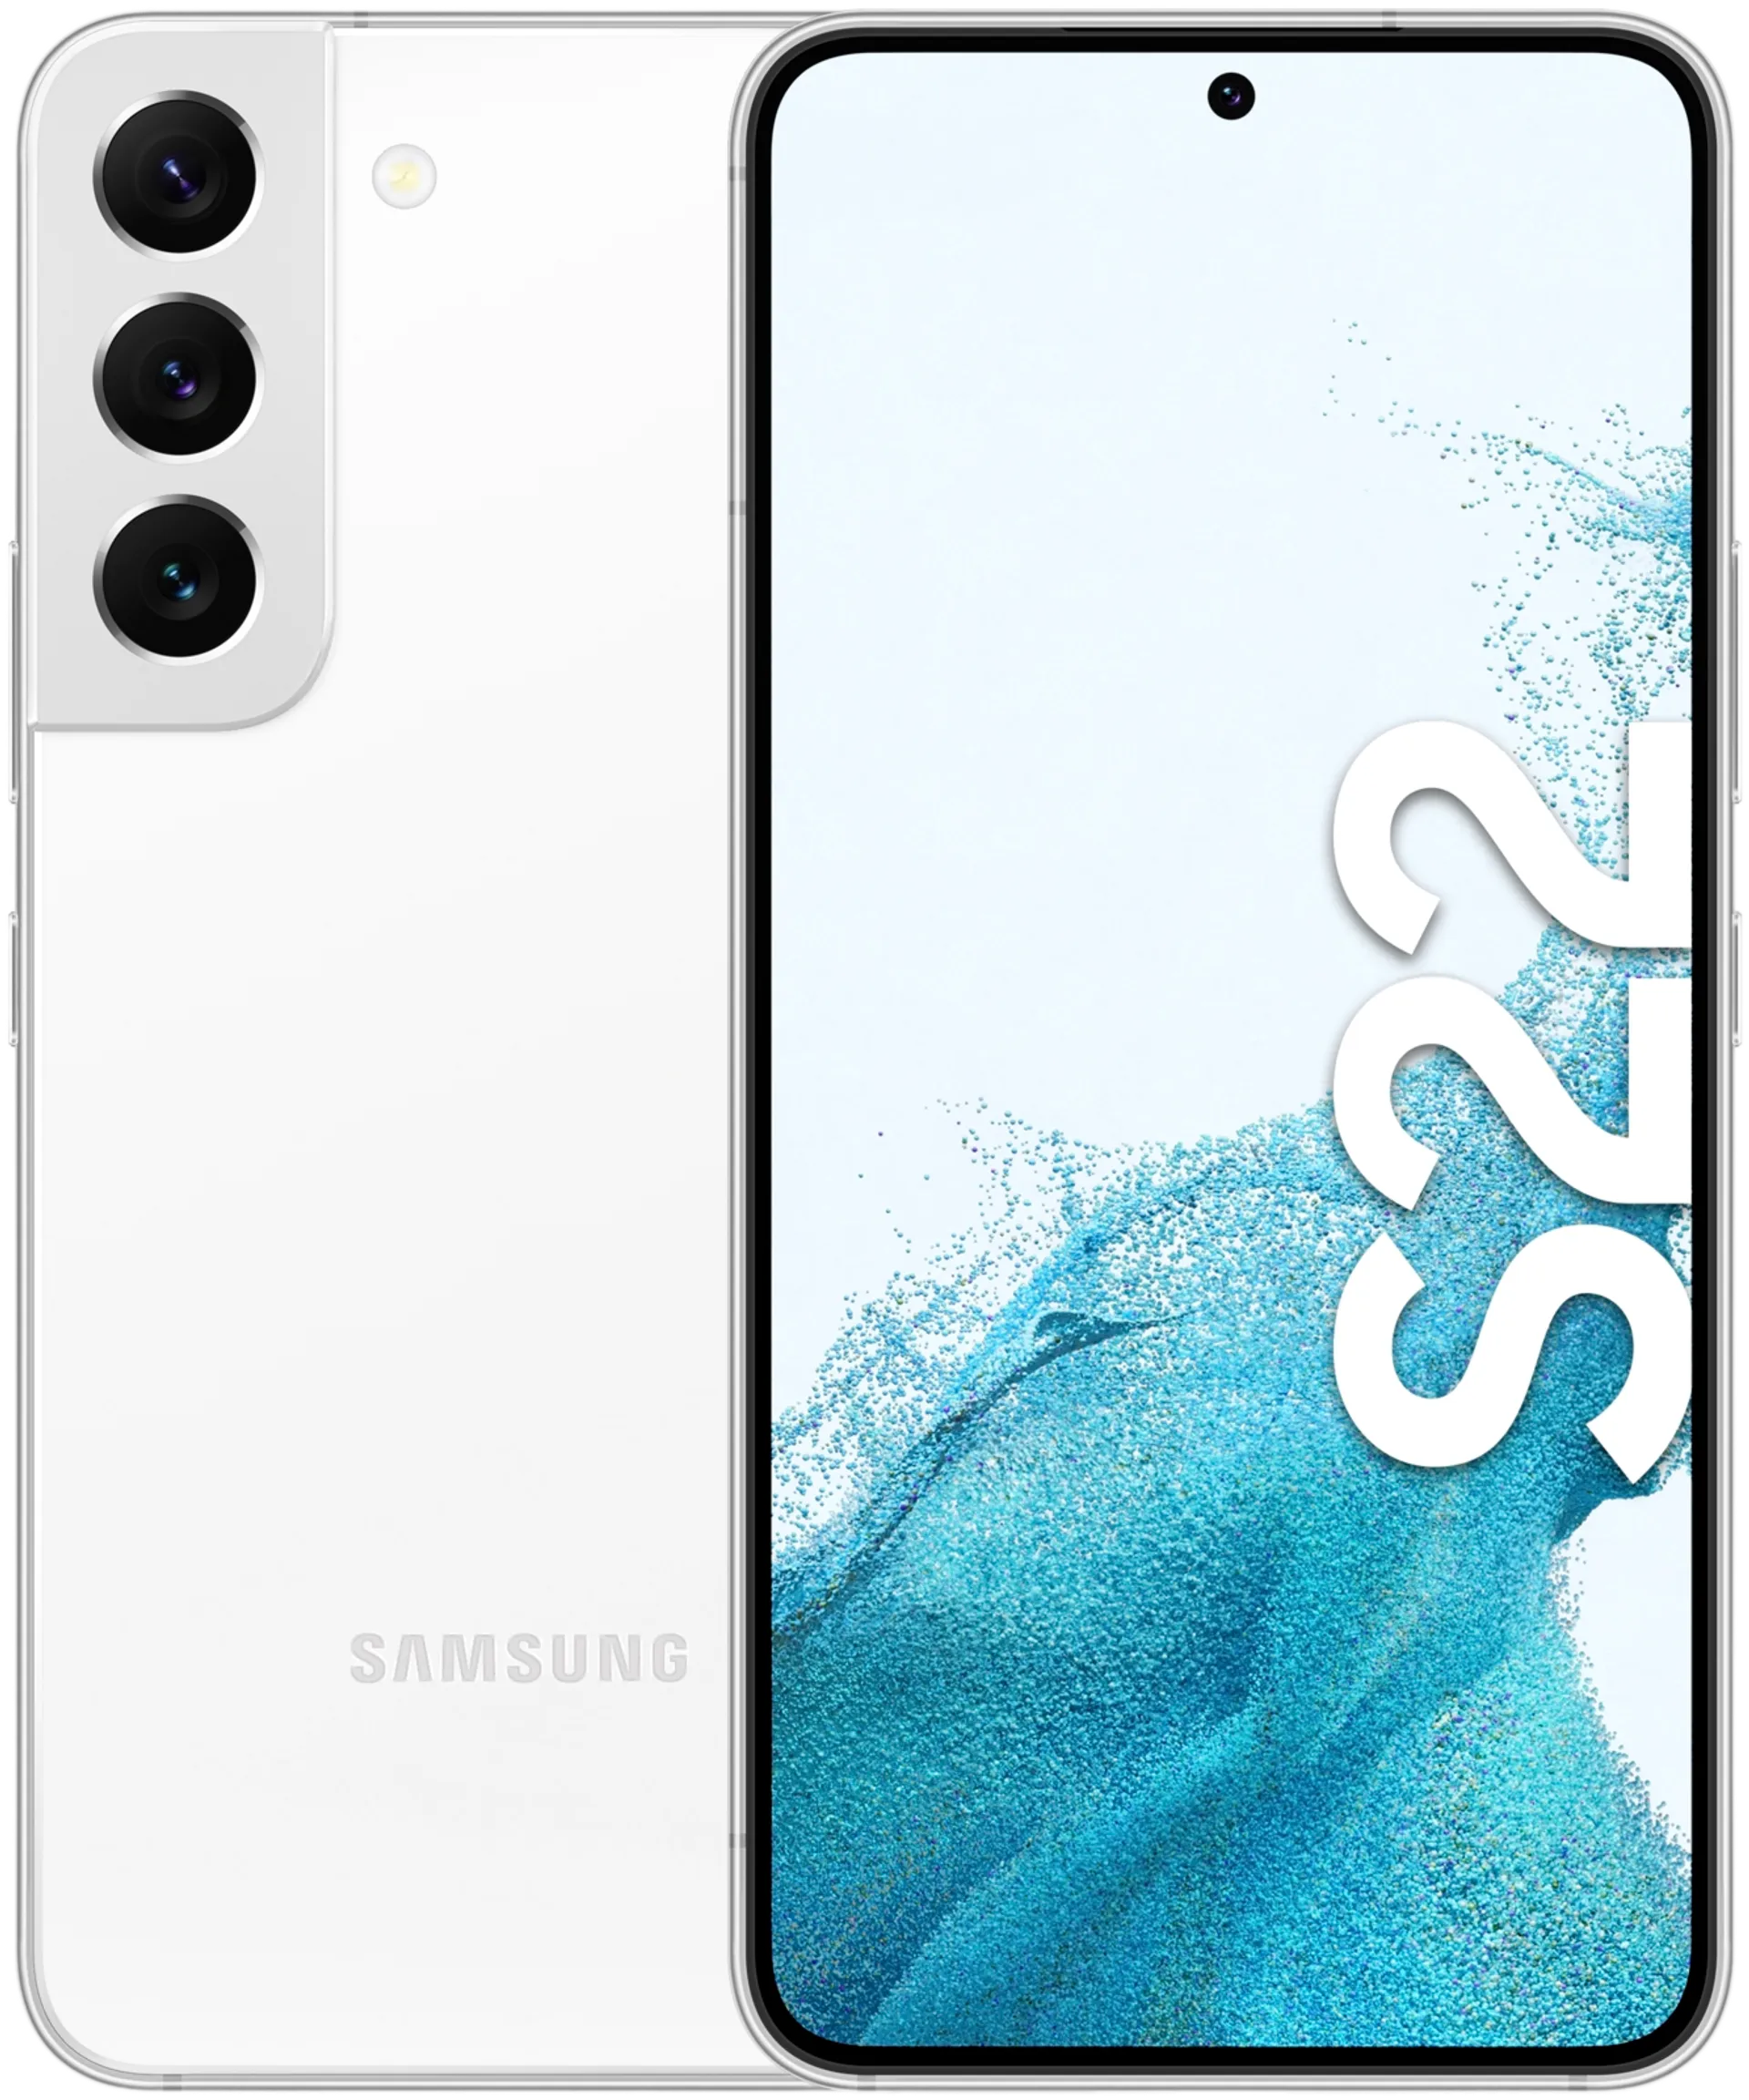 Samsung Galaxy S22 5G 128GB valkoinen älypuhelin - 4